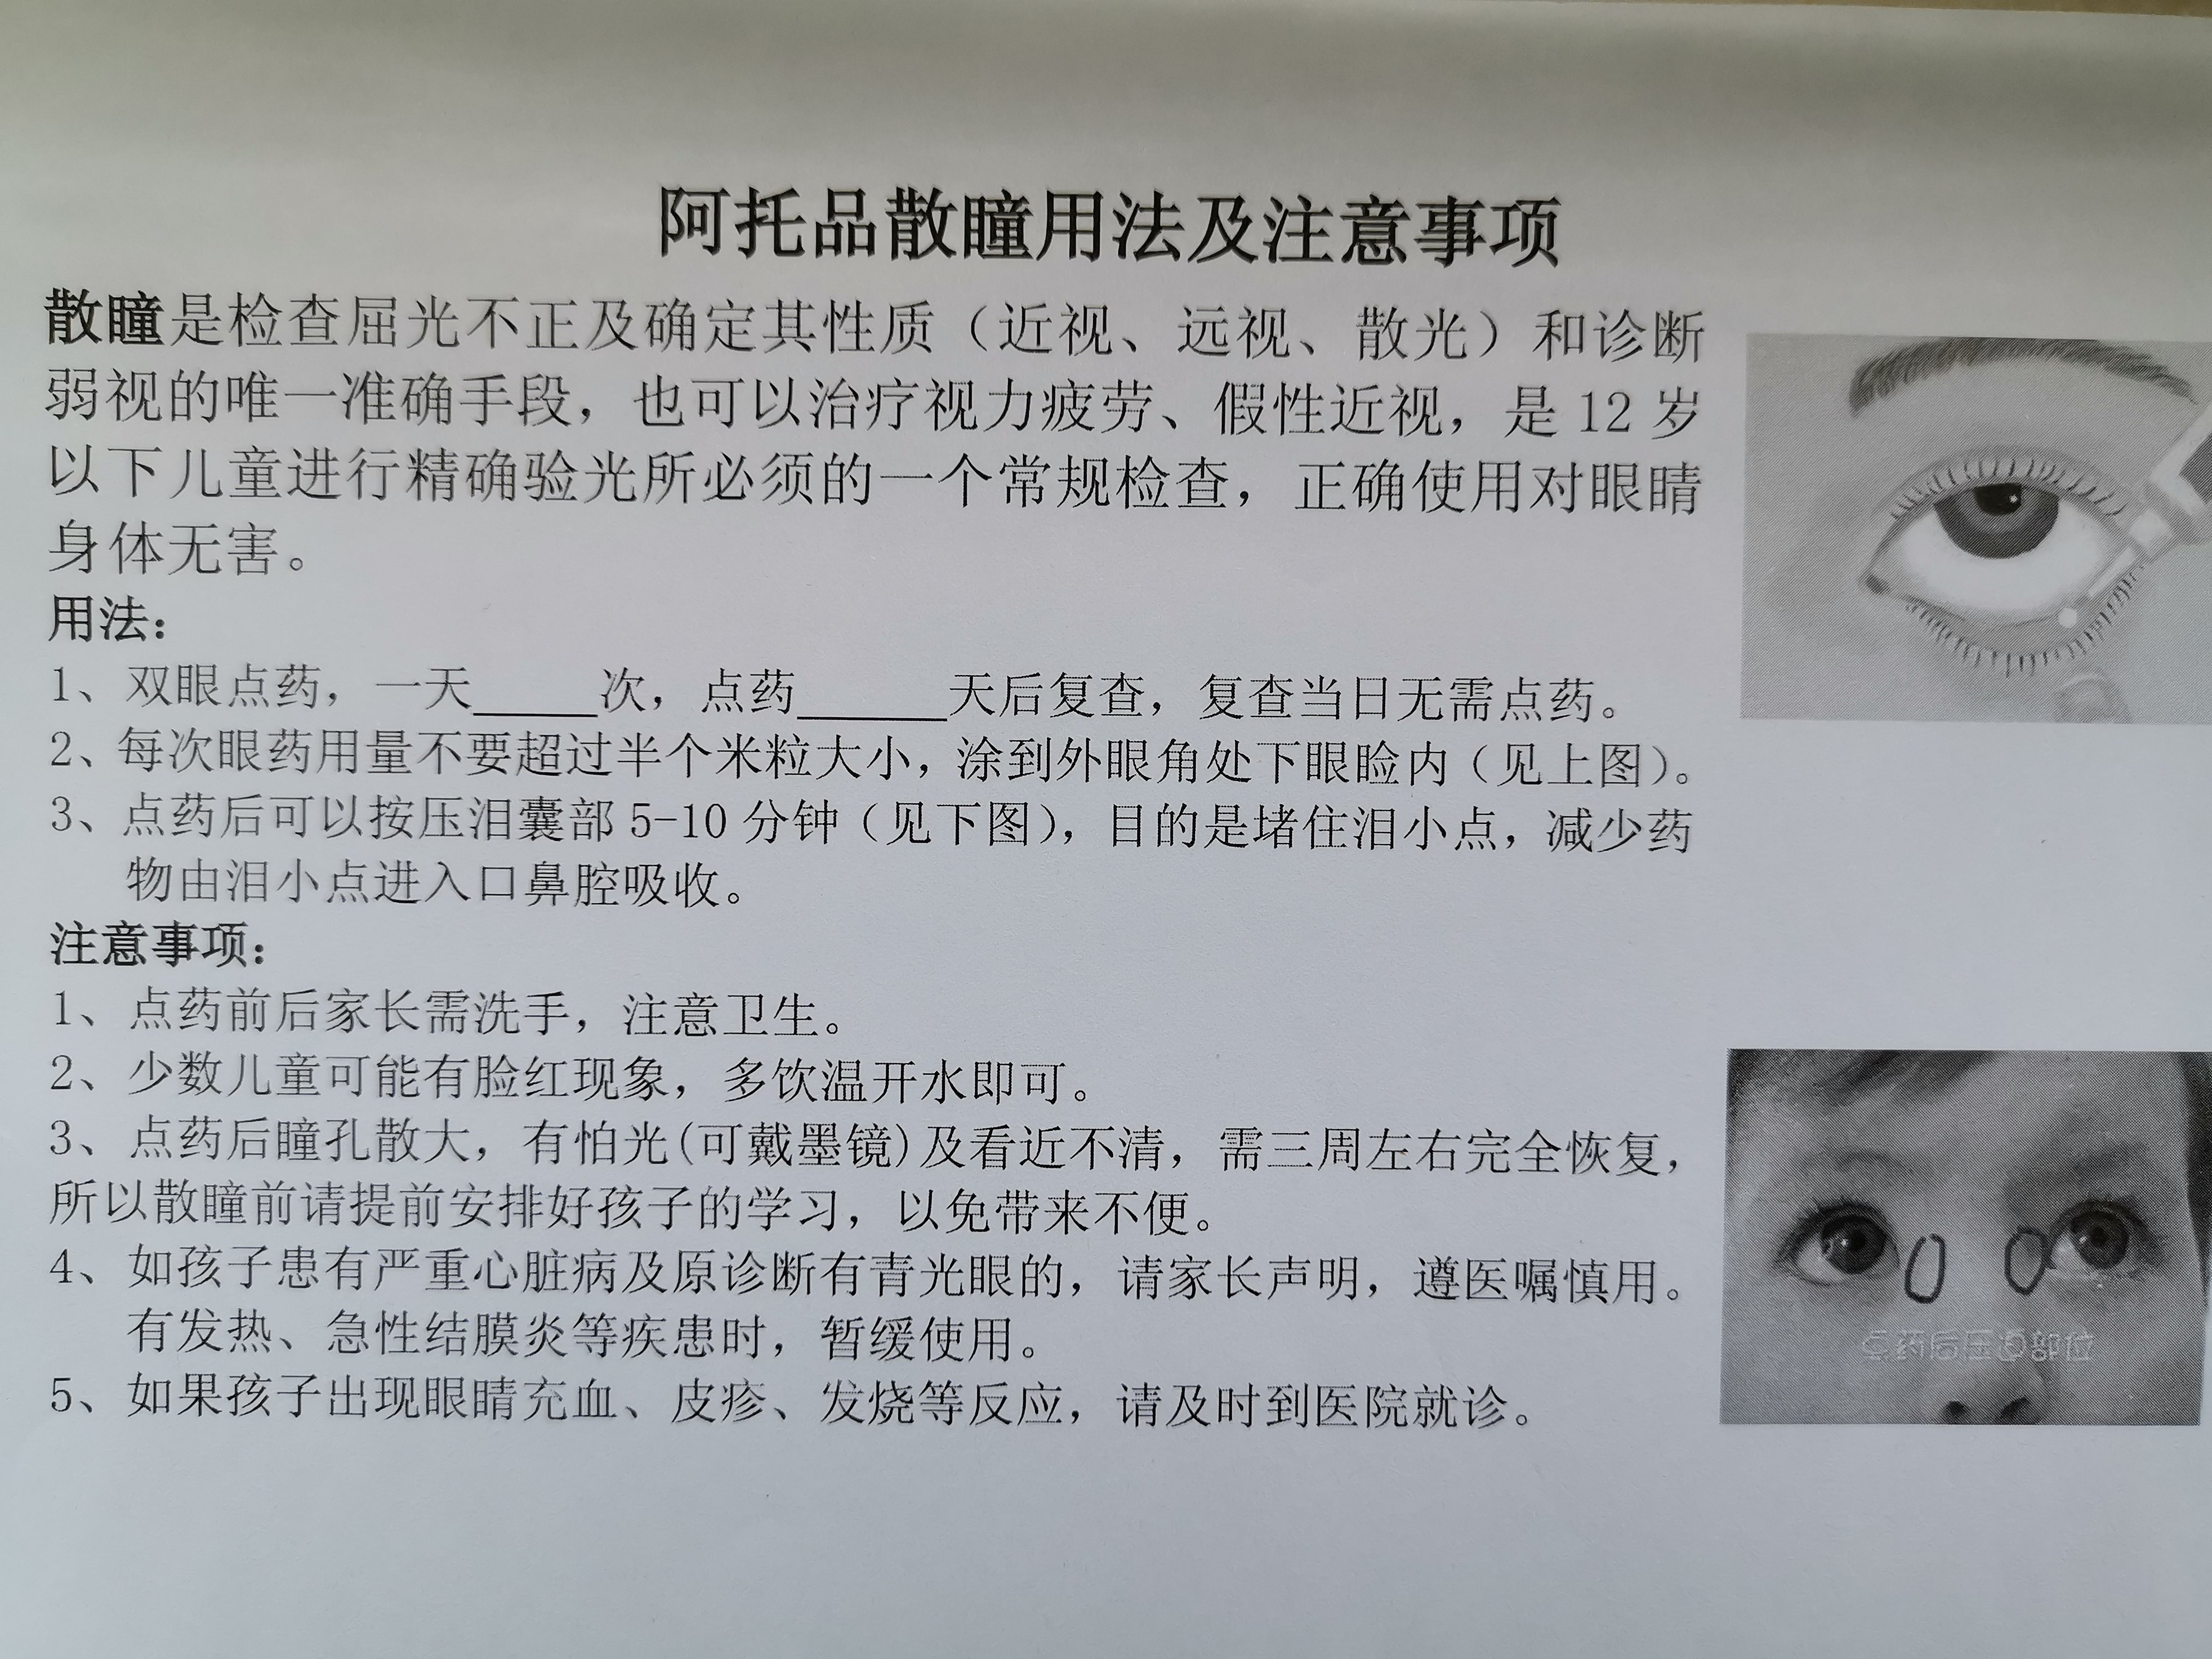 河南省儿童医院阿托品眼用凝胶用法及注意事项